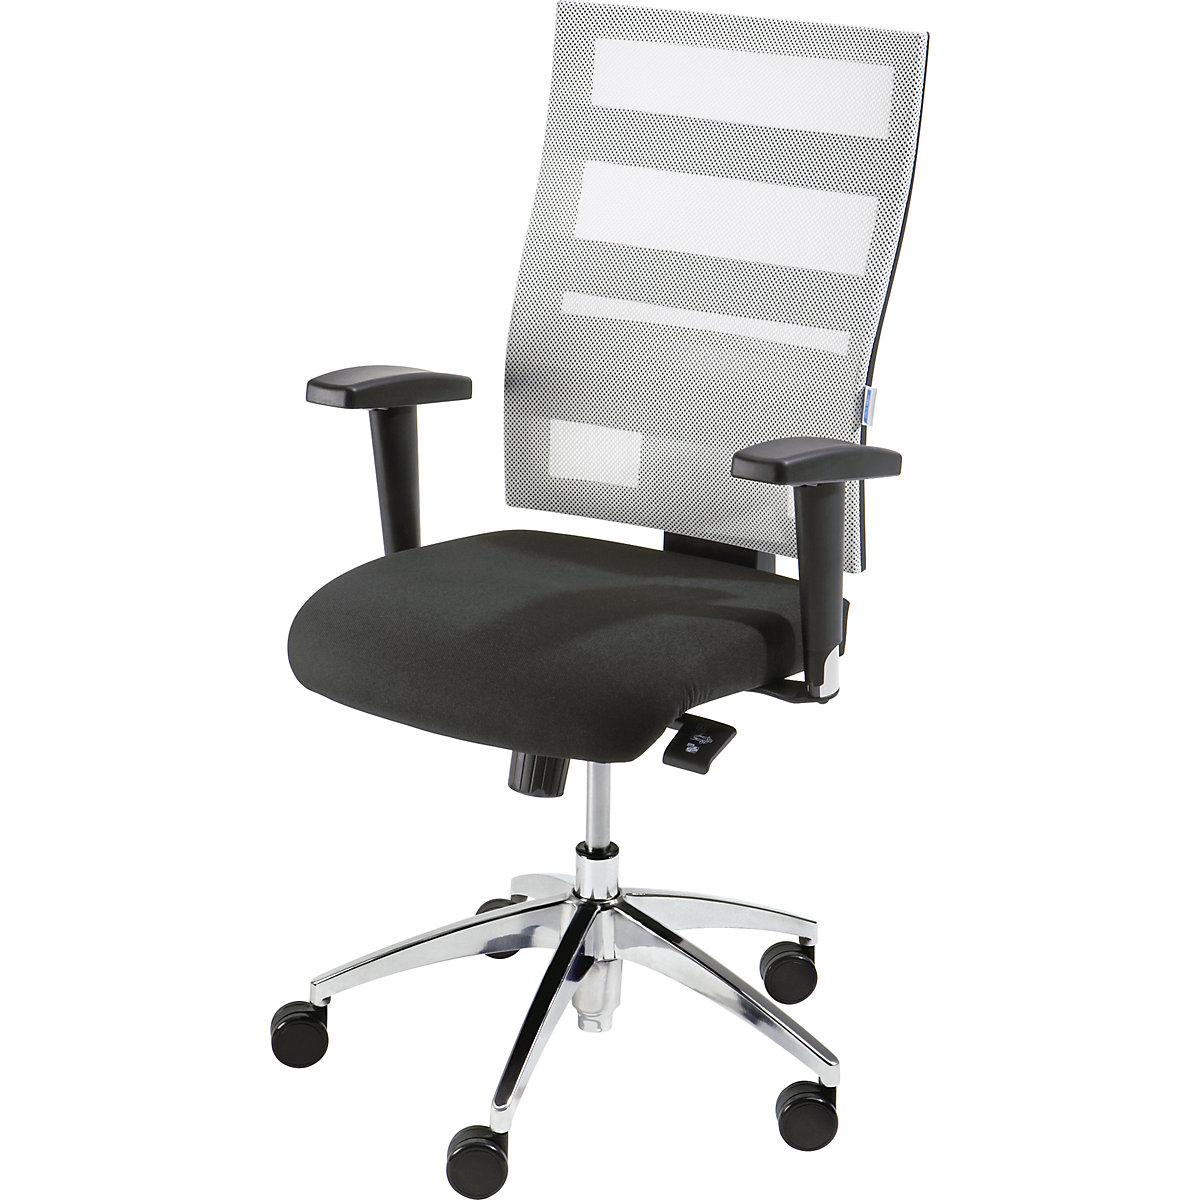 EUROKRAFTpro – Otočná židle pro operátory, výška opěradla 550 mm, mechanika s bodovou synchronizací, plochý sedák, černý sedák, bílé síťované opěradlo